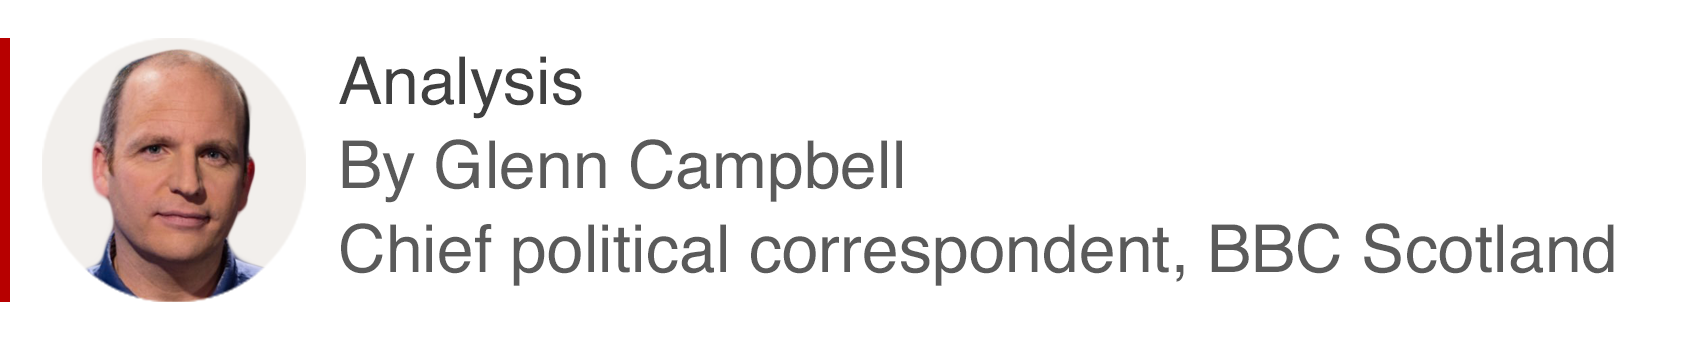 Аналитическая коробка Гленна Кэмпбелла, главного политического корреспондента BBC Scotland